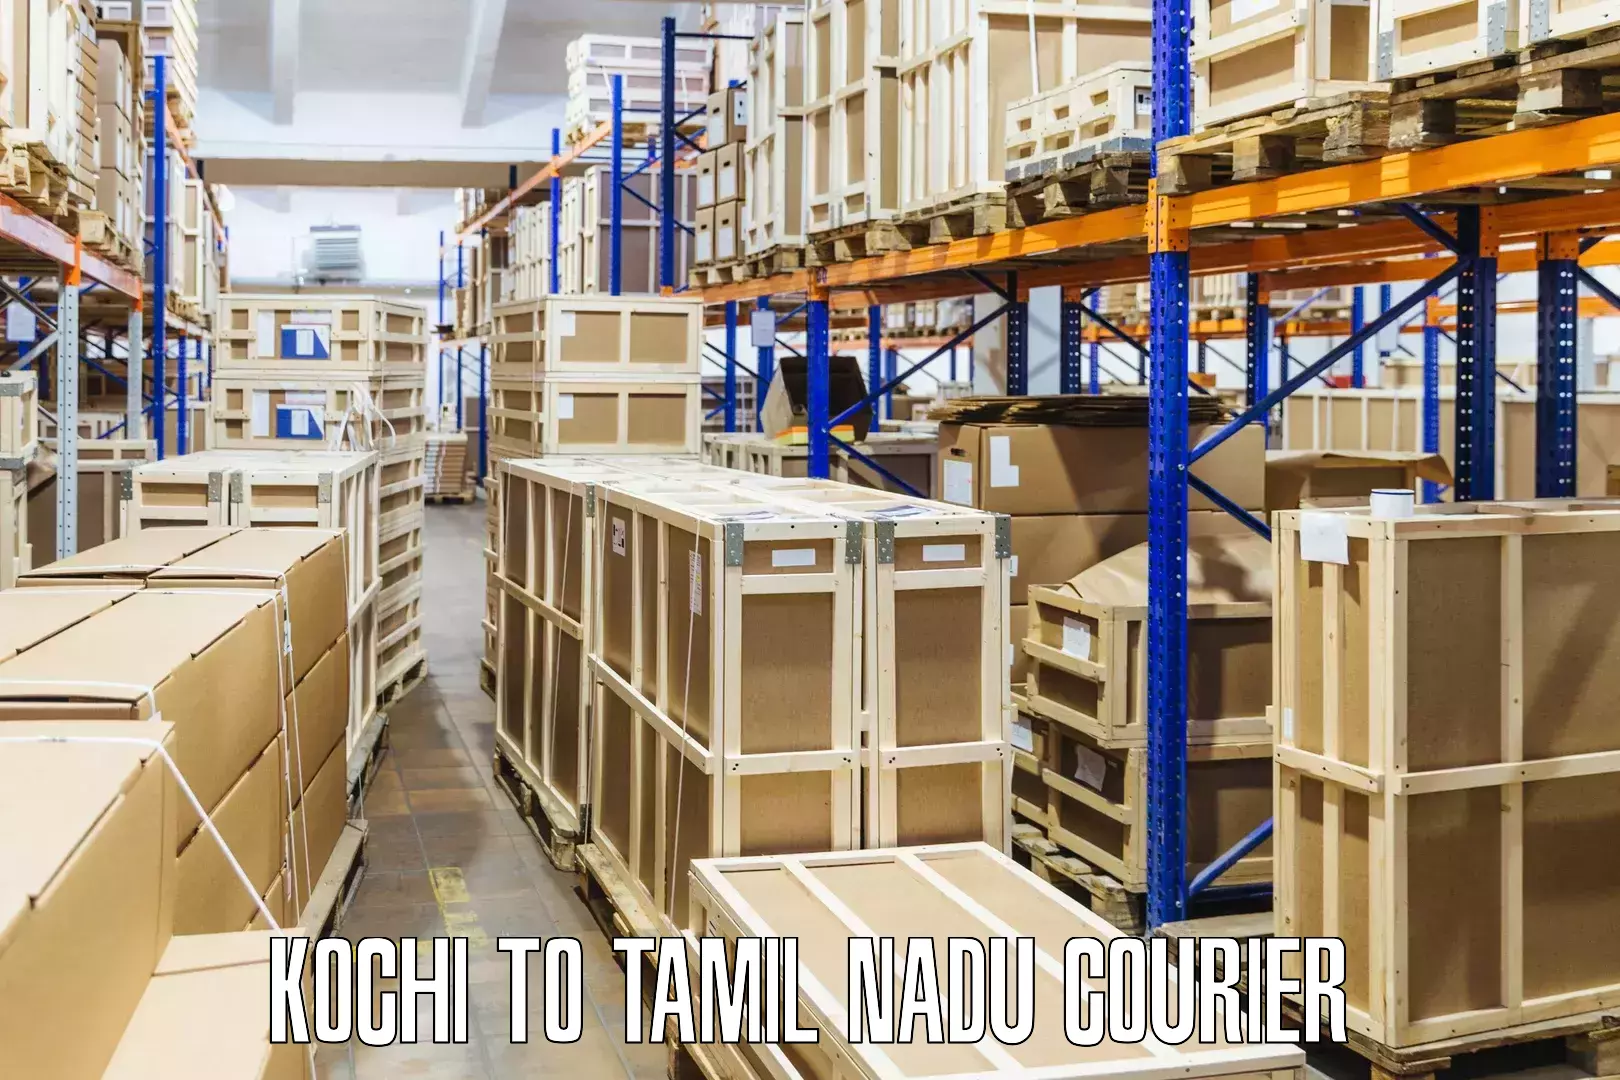 Courier service comparison Kochi to Villupuram